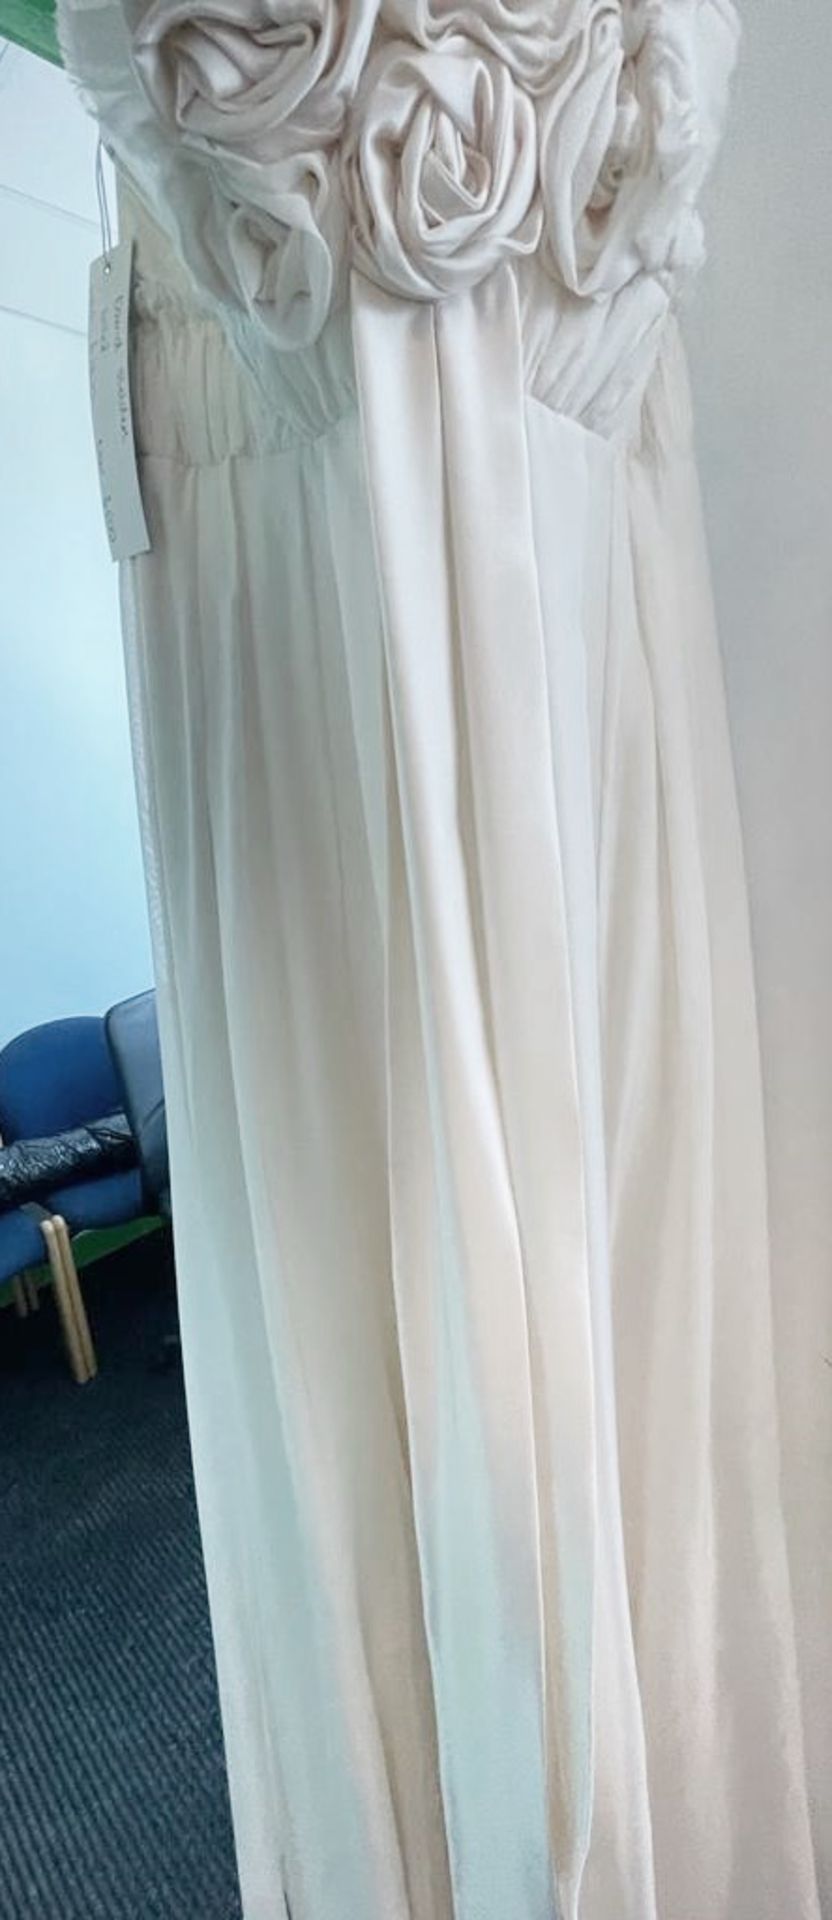 1 x DAVID FIELDEN Designer Silk Strapless Grecian-style Column Wedding Dress Bridal Gown, With - Image 6 of 8